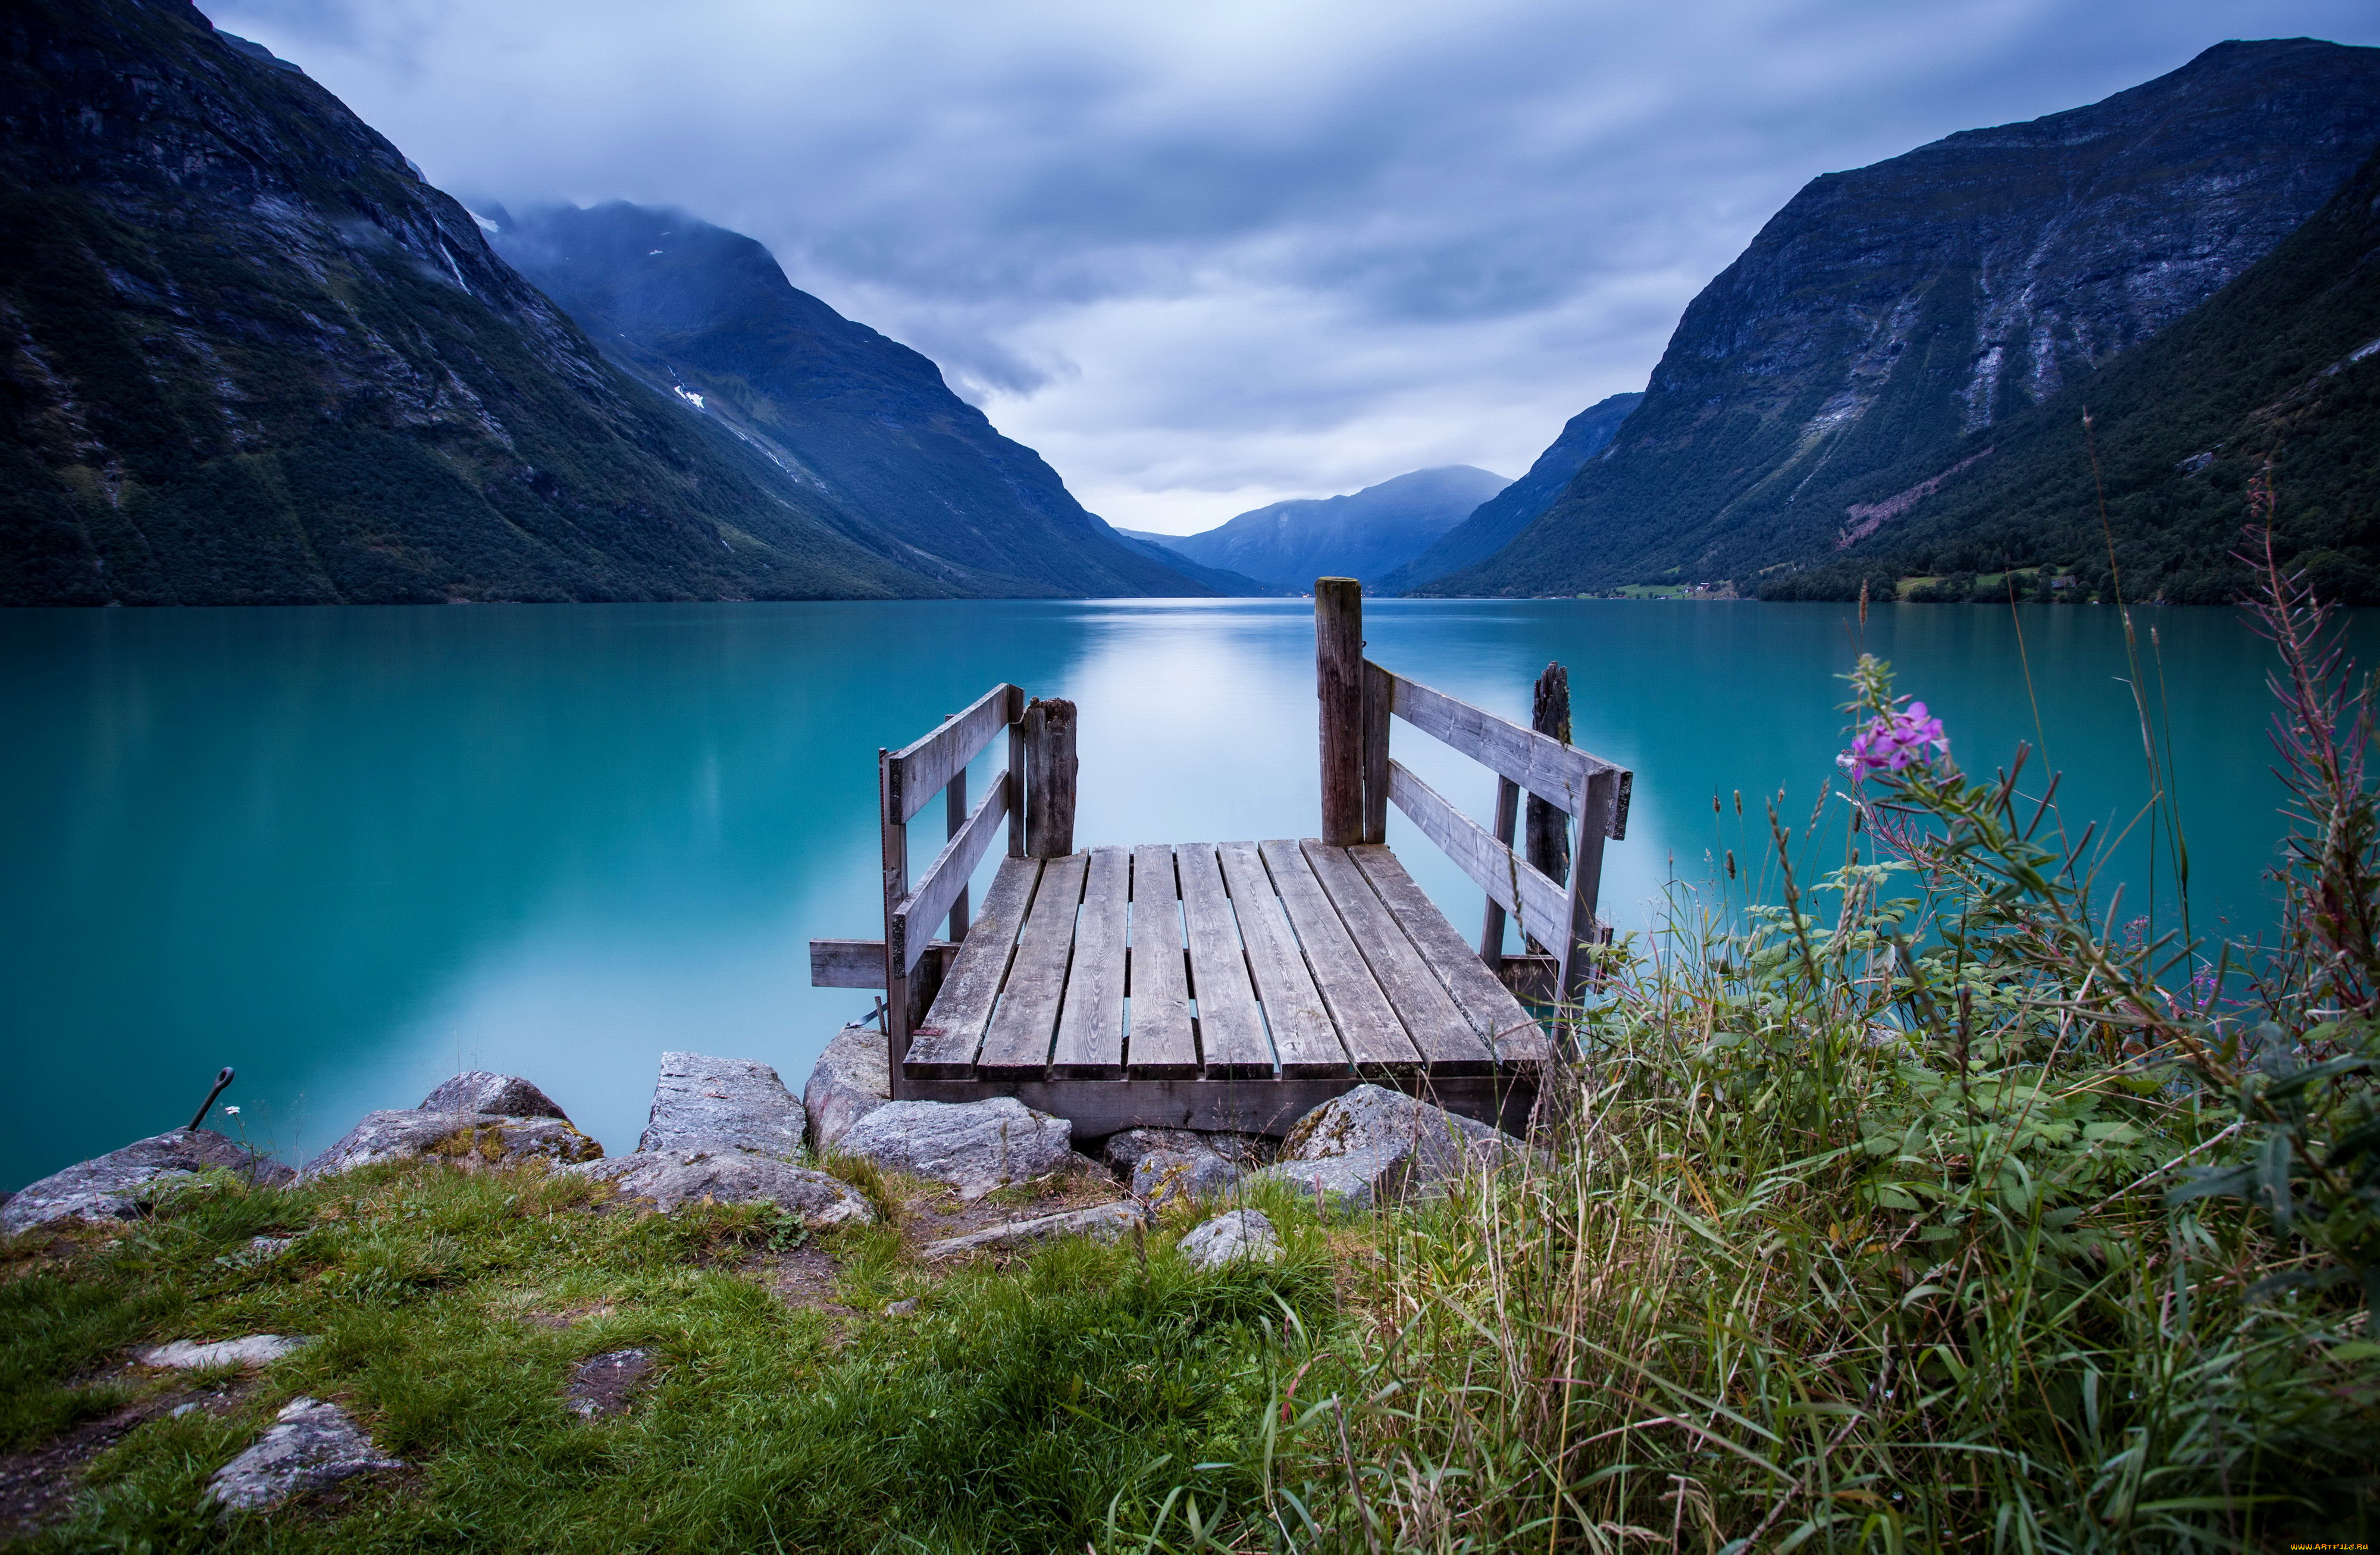 Картинки на обои. Озеро МЬЁСА Норвегия. Лофотенские острова, Норвегия. Гейрангер-Фьорд Норвегия. Телецкое озеро.